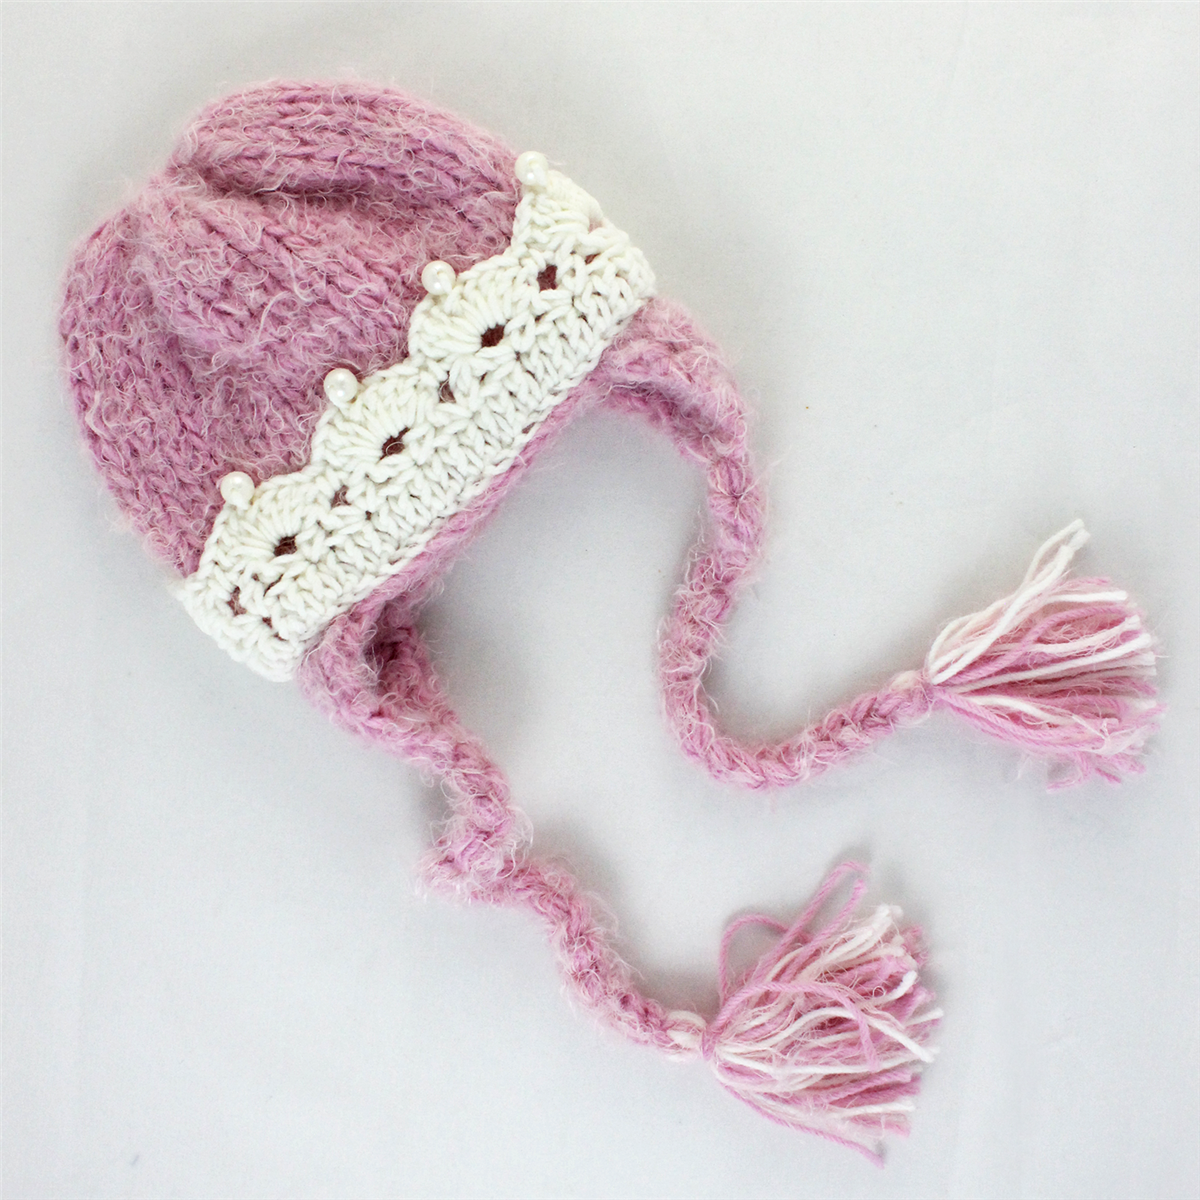 The Daisy Baby Handmade Hat - Abigail